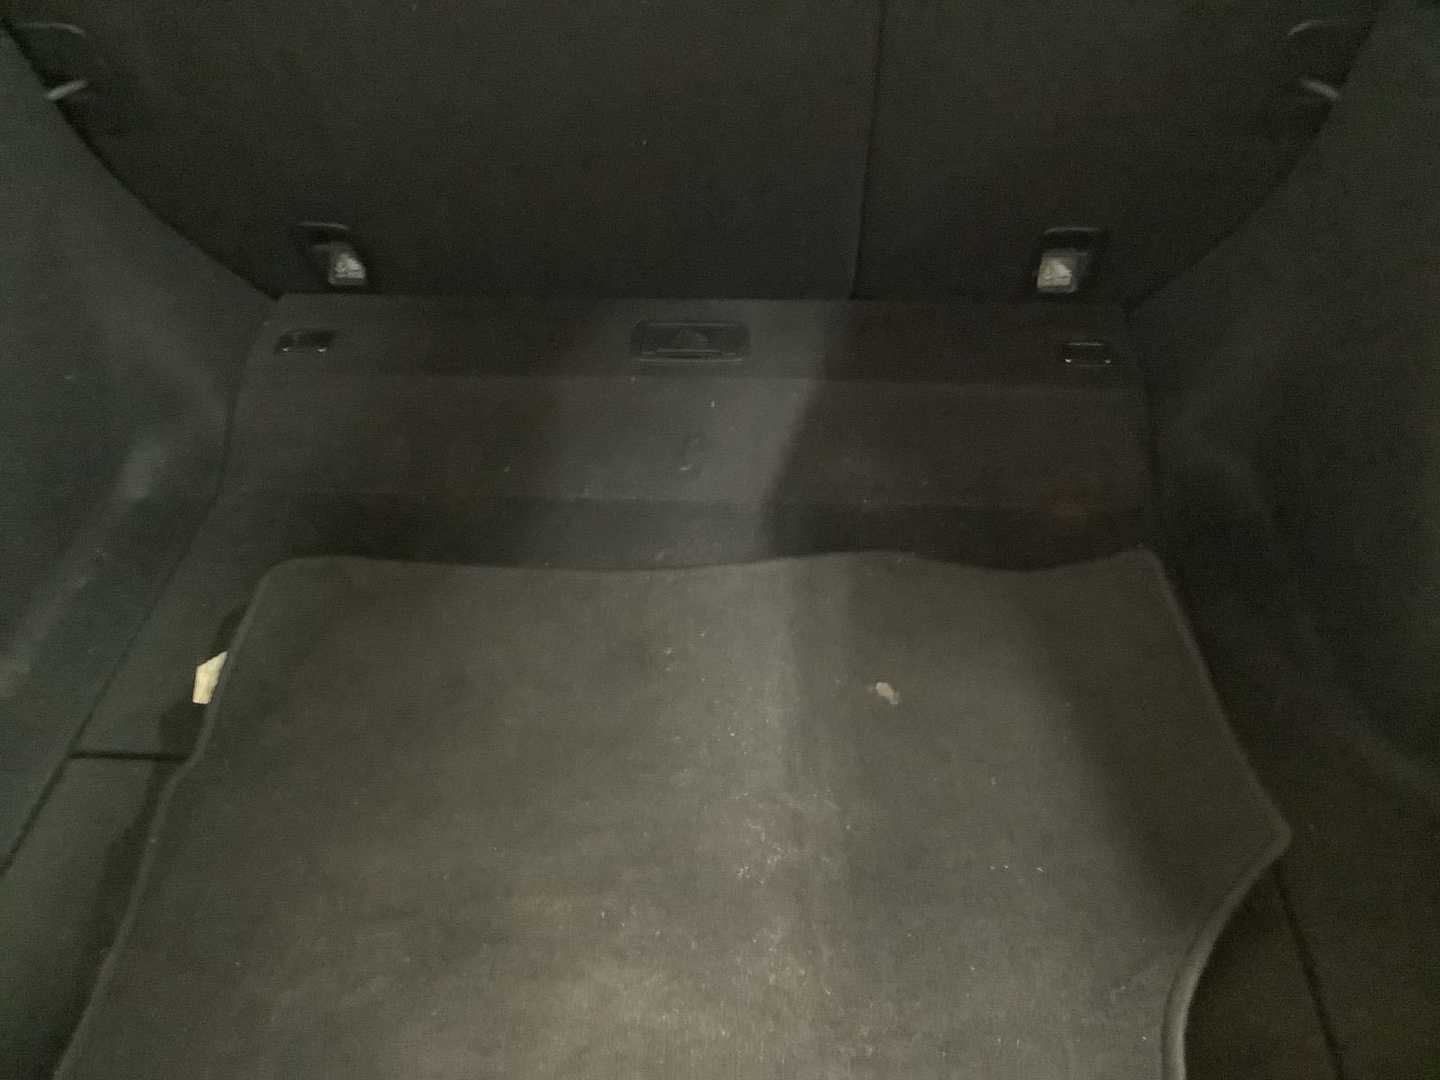 carros - Honda Civic 2019 Clean Carfax Recien importado 7